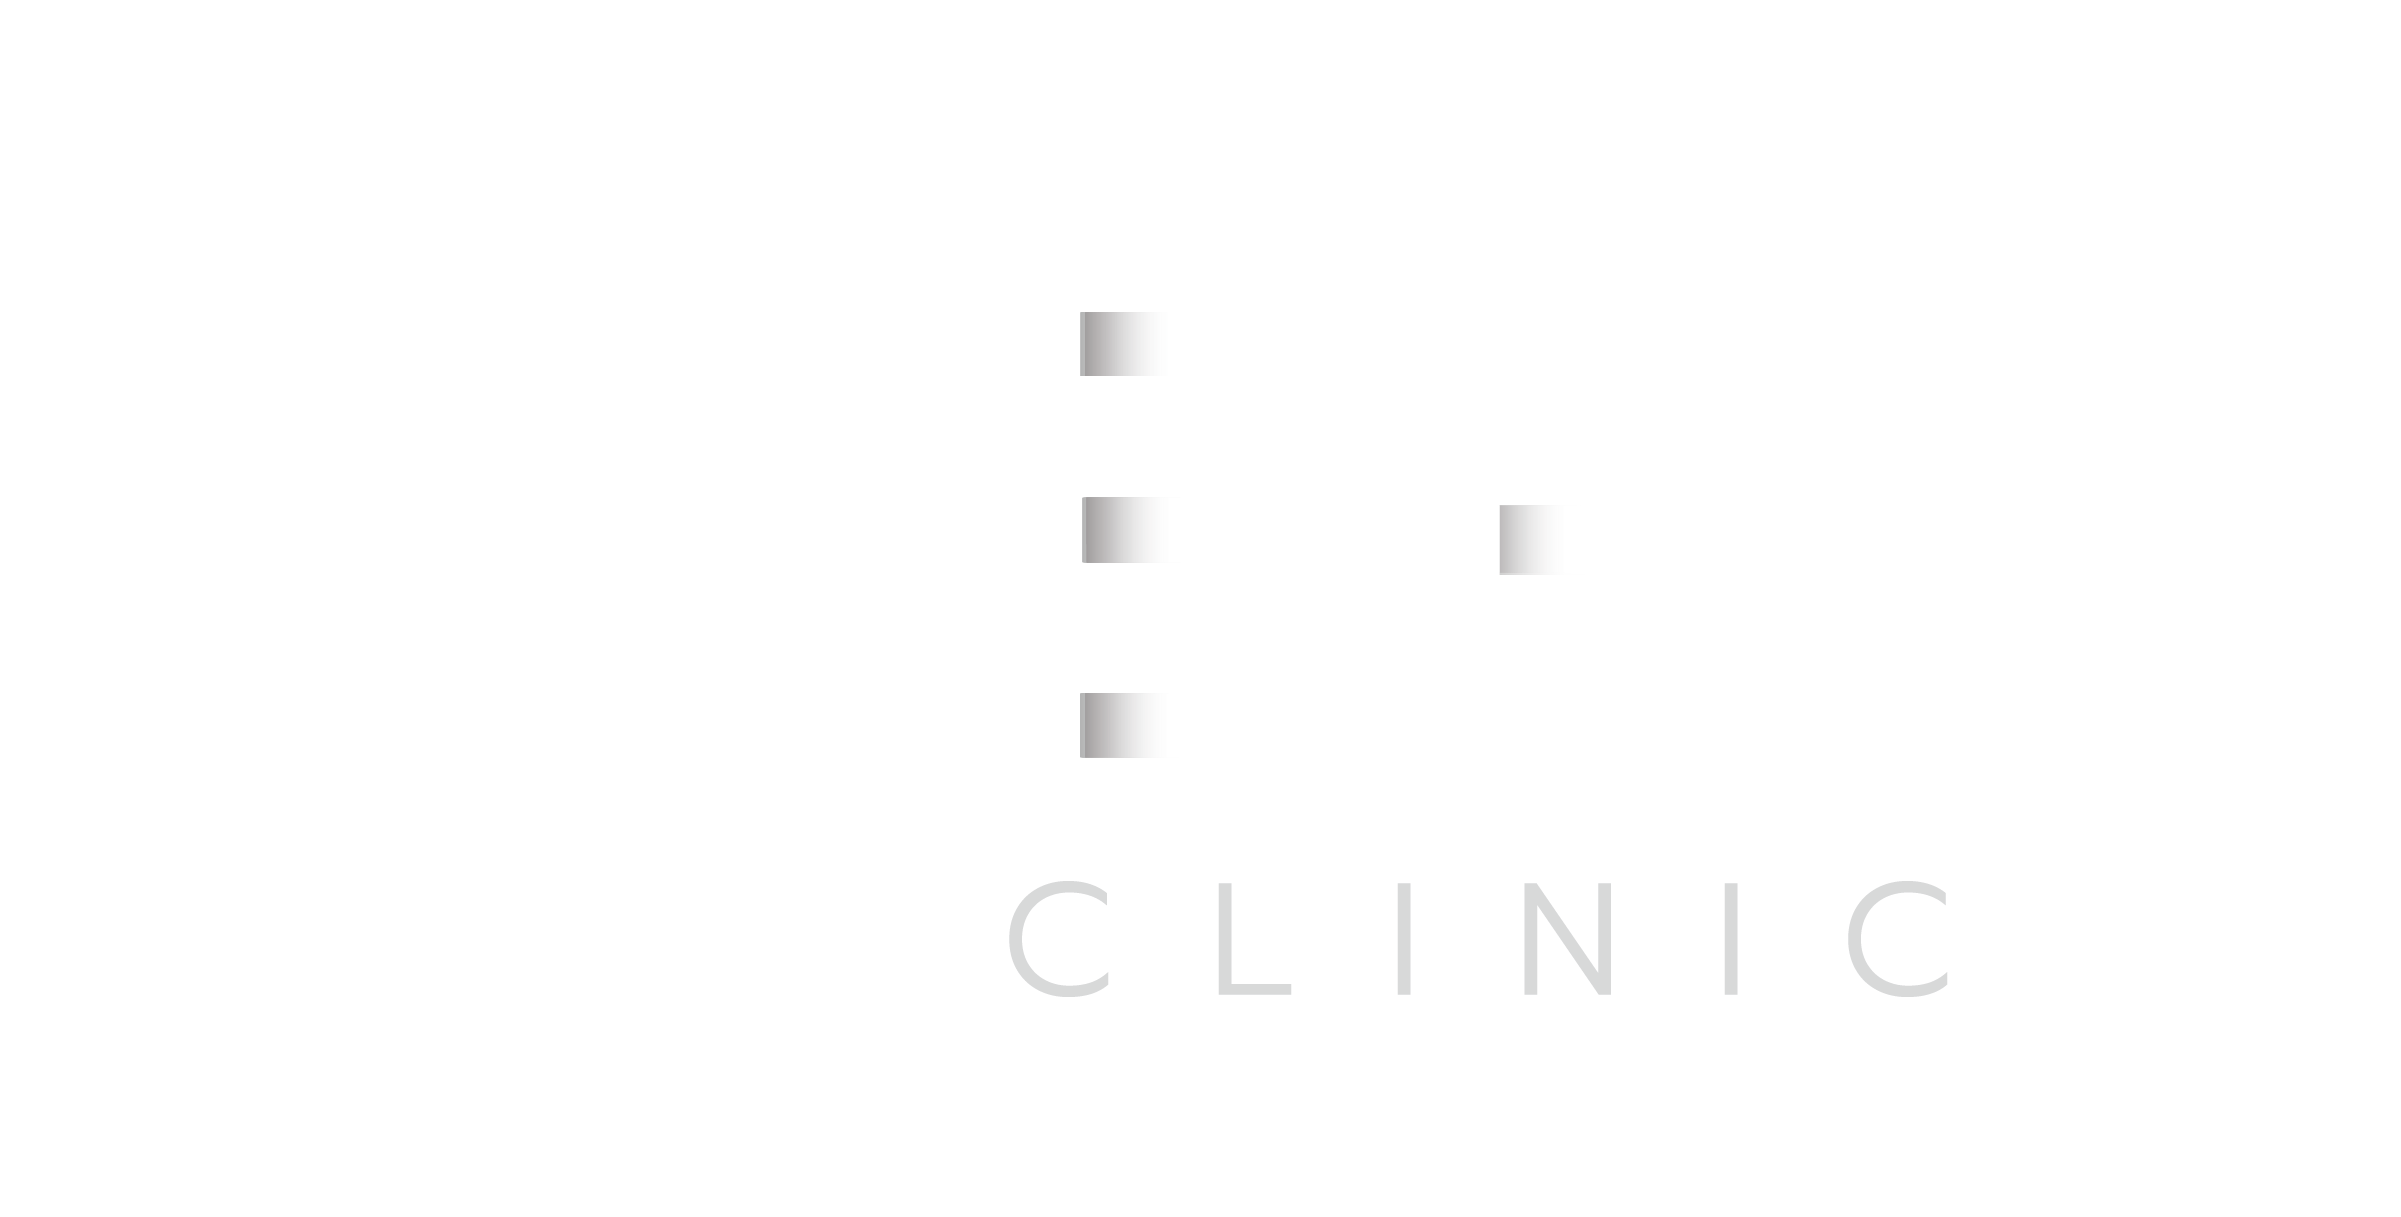 BHI Clinic